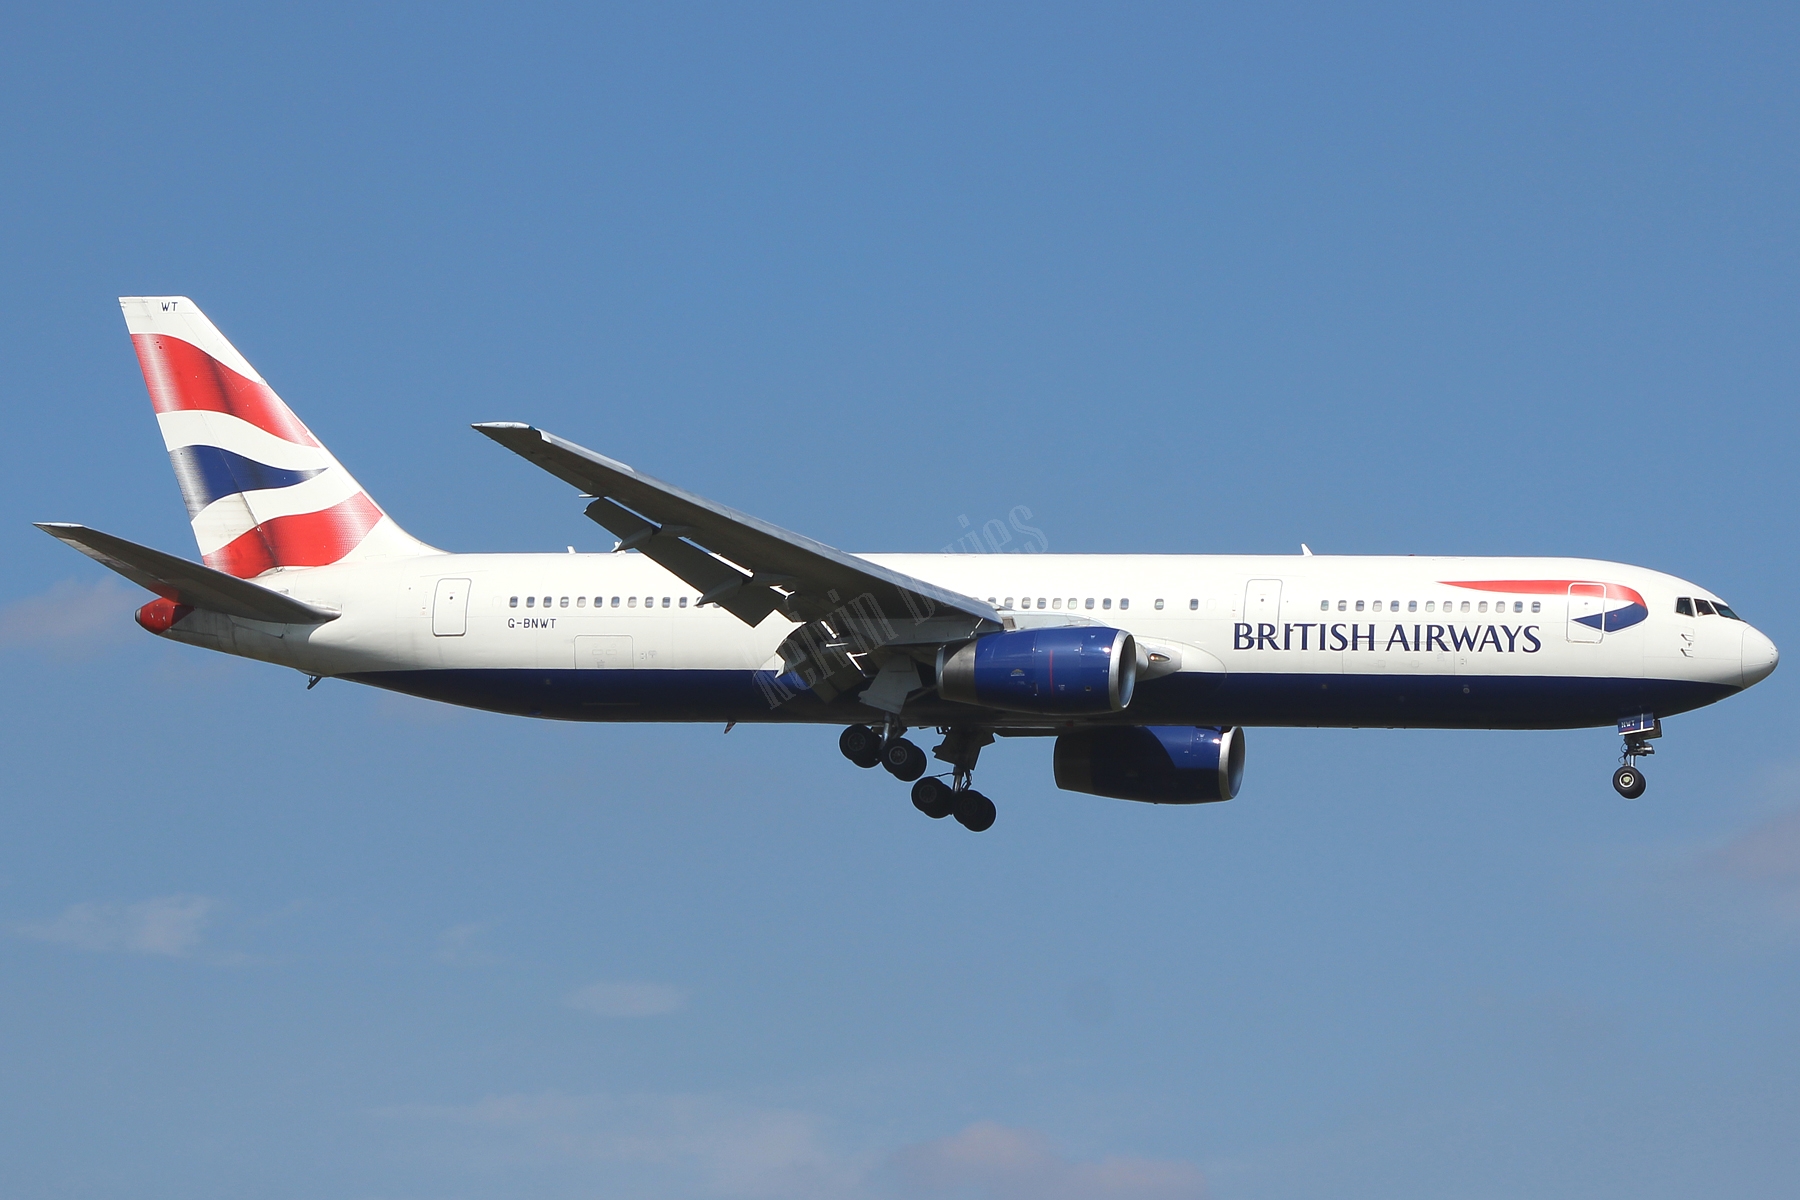 British Airways 767 G-BNWT